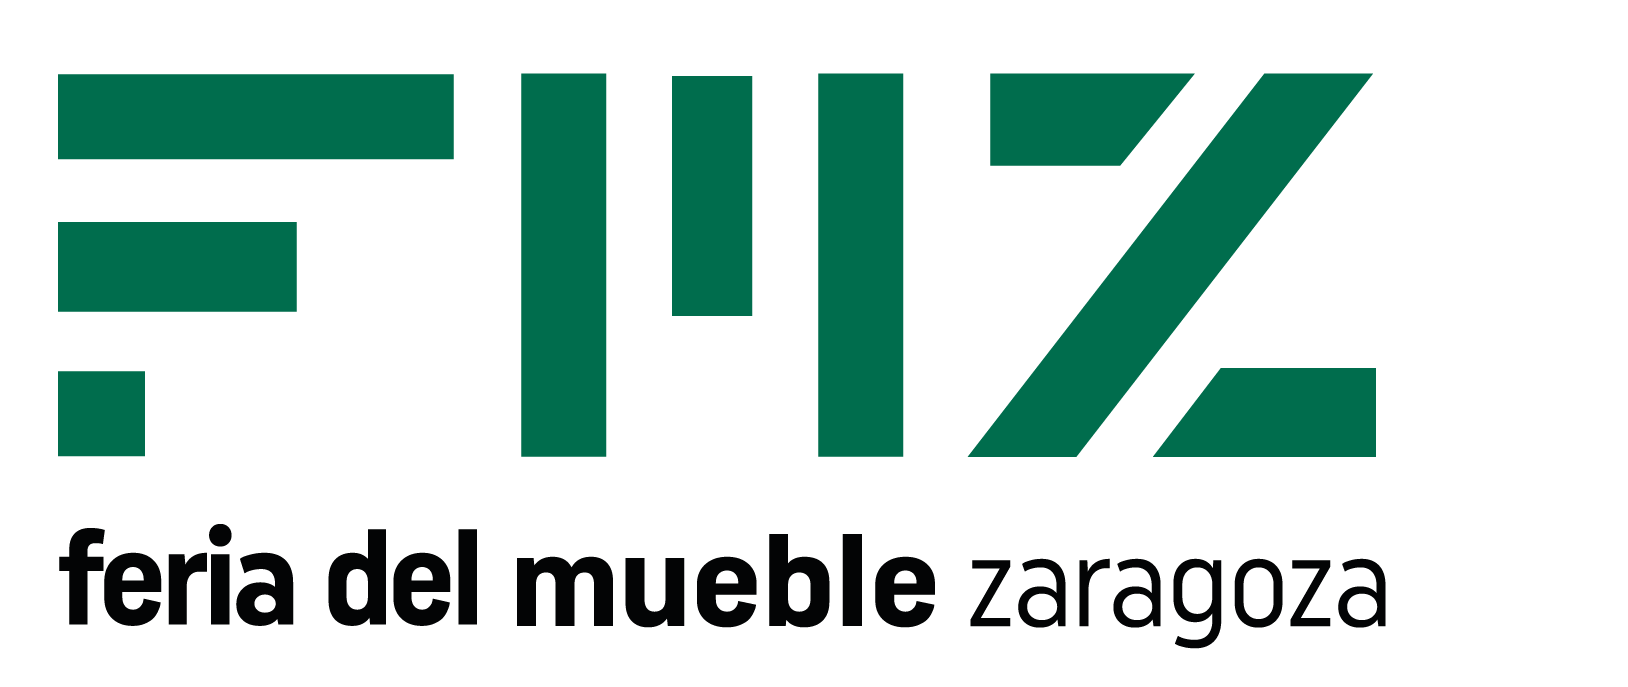 FMZ 2022, Feria Internacional del Mueble en Zaragoza